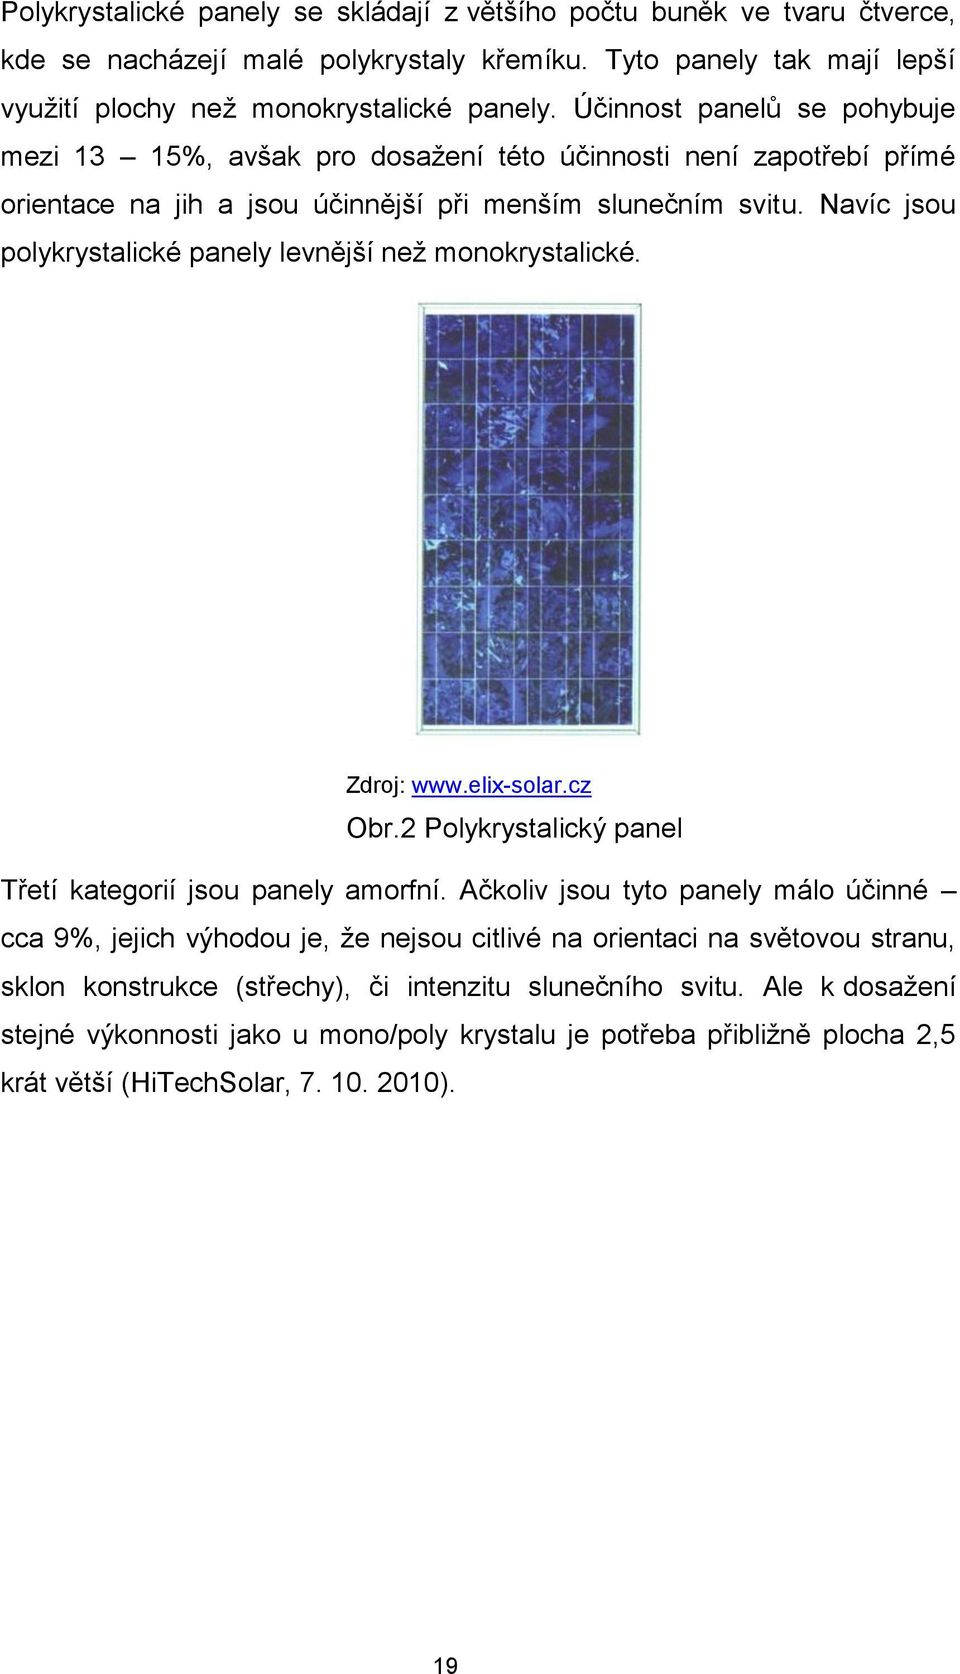 Navíc jsou polykrystalické panely levnější než monokrystalické. Zdroj: www.elix-solar.cz Obr.2 Polykrystalický panel Třetí kategorií jsou panely amorfní.